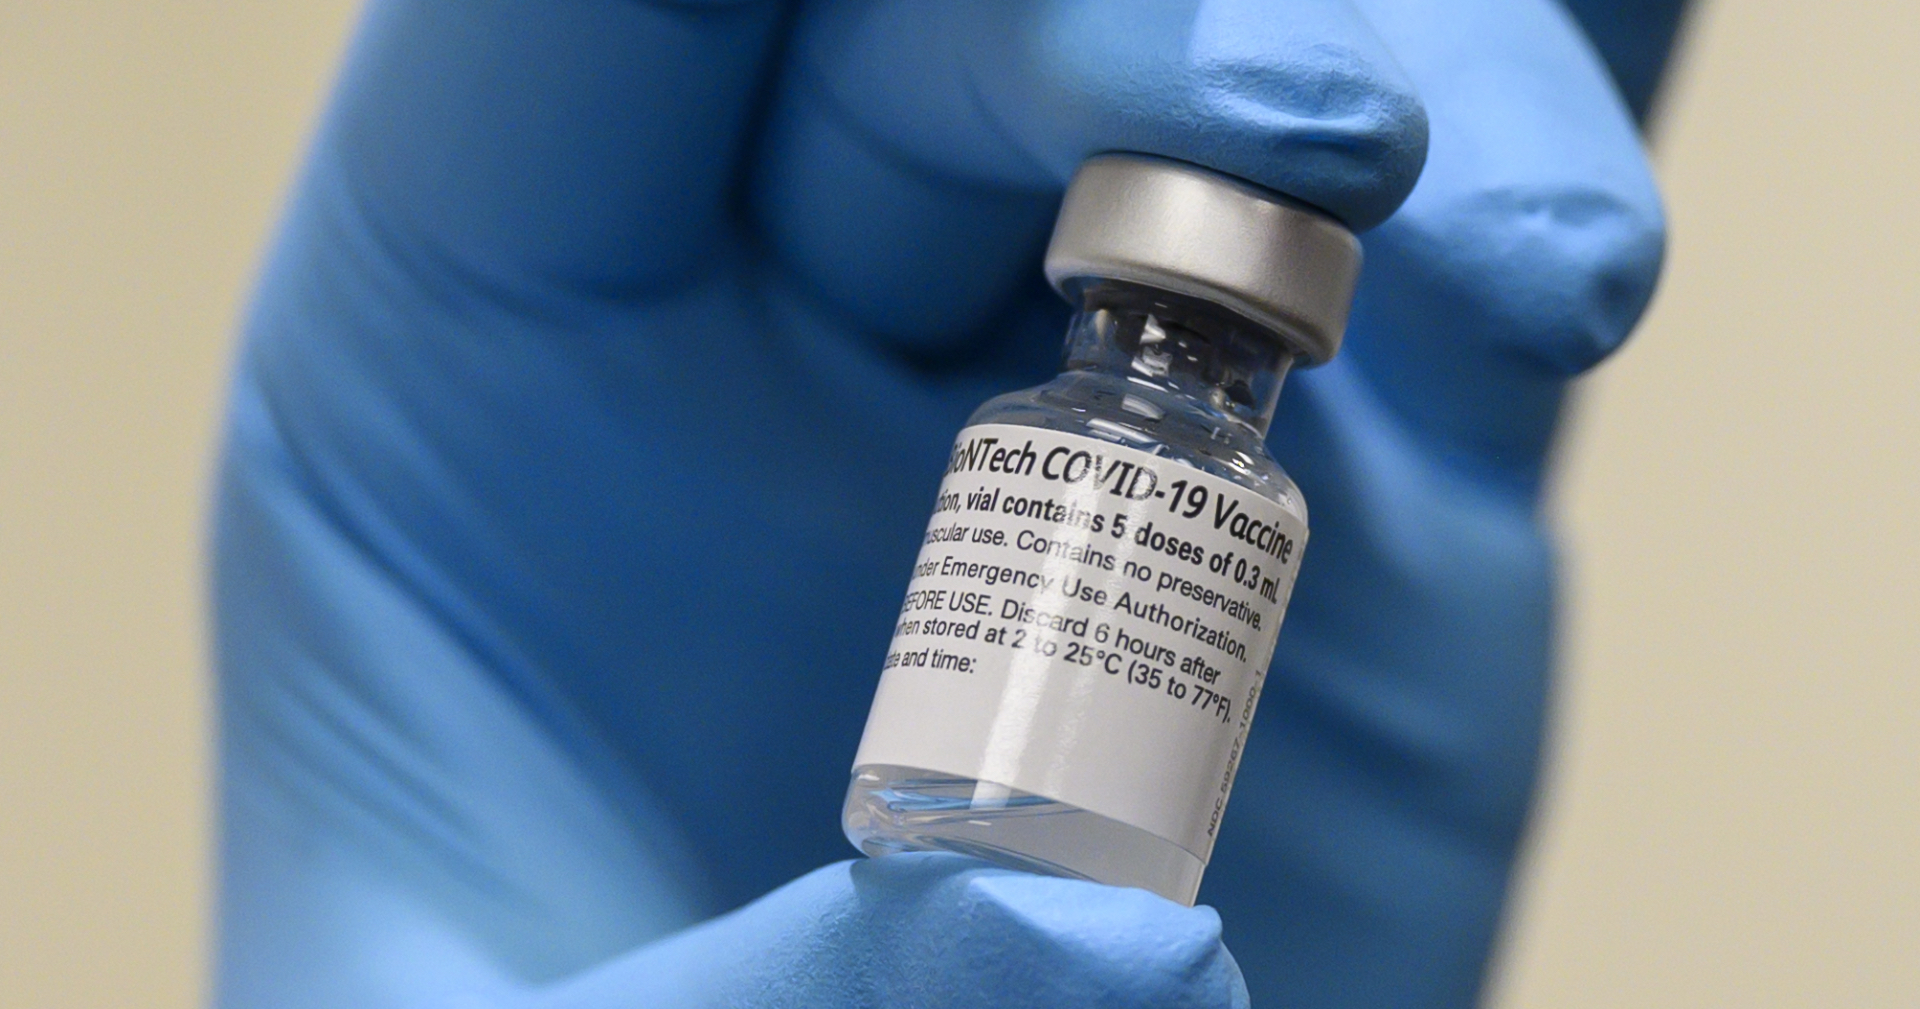 ปัญหาชิปขาดแคลนจะยิ่งรุนแรงขึ้นหากวัคซีน Covid-19 ยังไม่ทั่วถึง